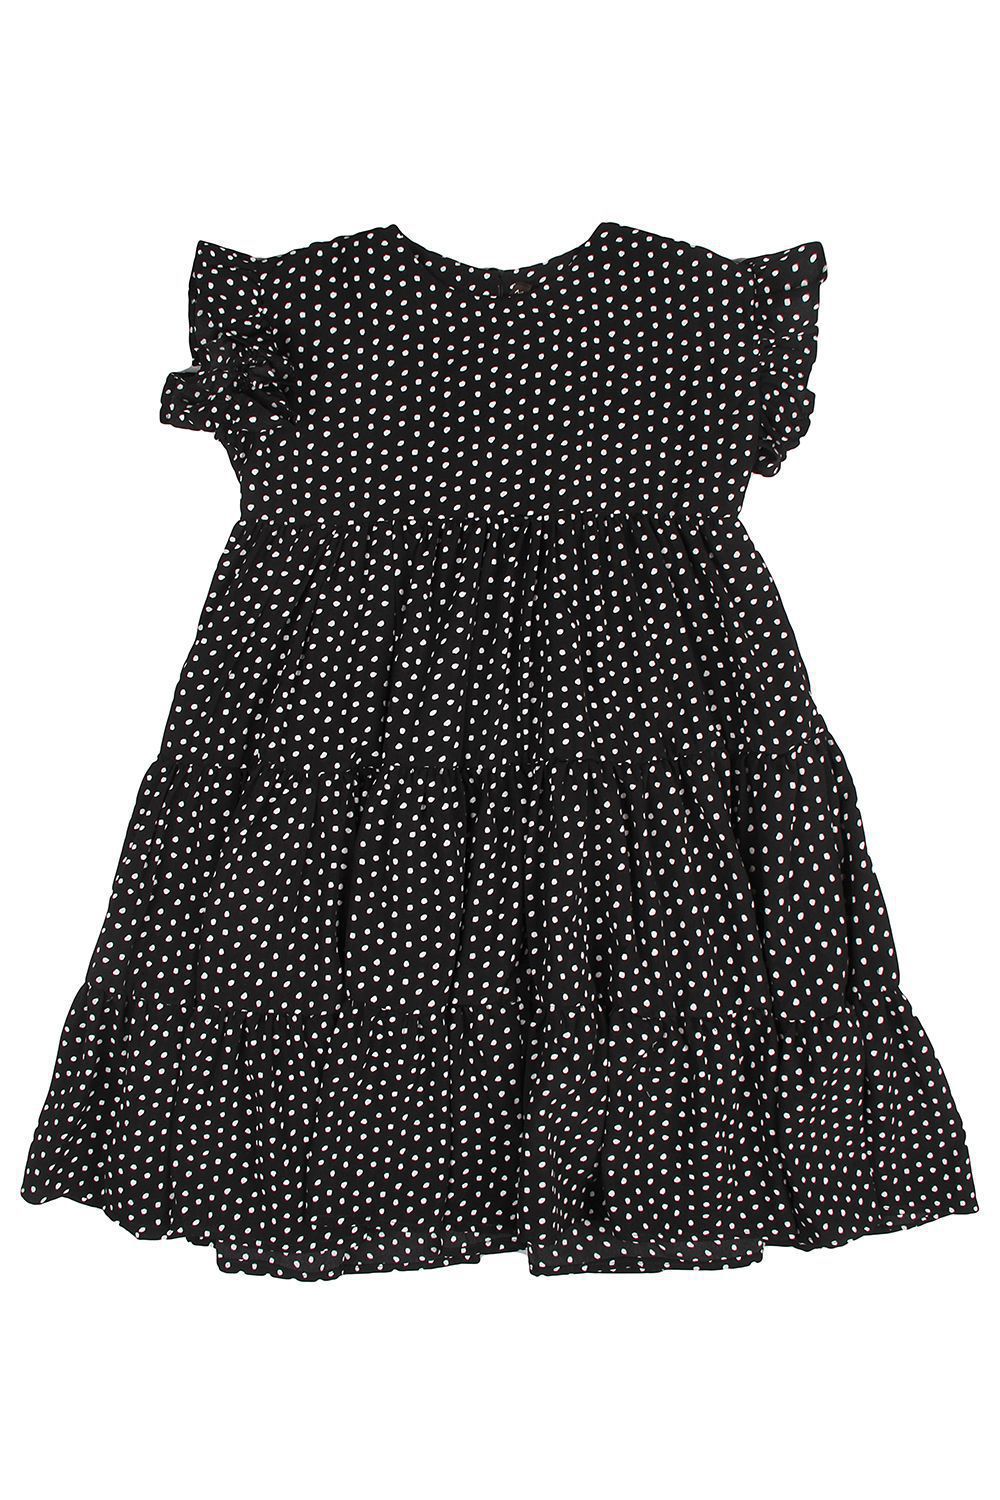 Платье Manila Grace, размер 168, цвет черный MG99 - фото 2